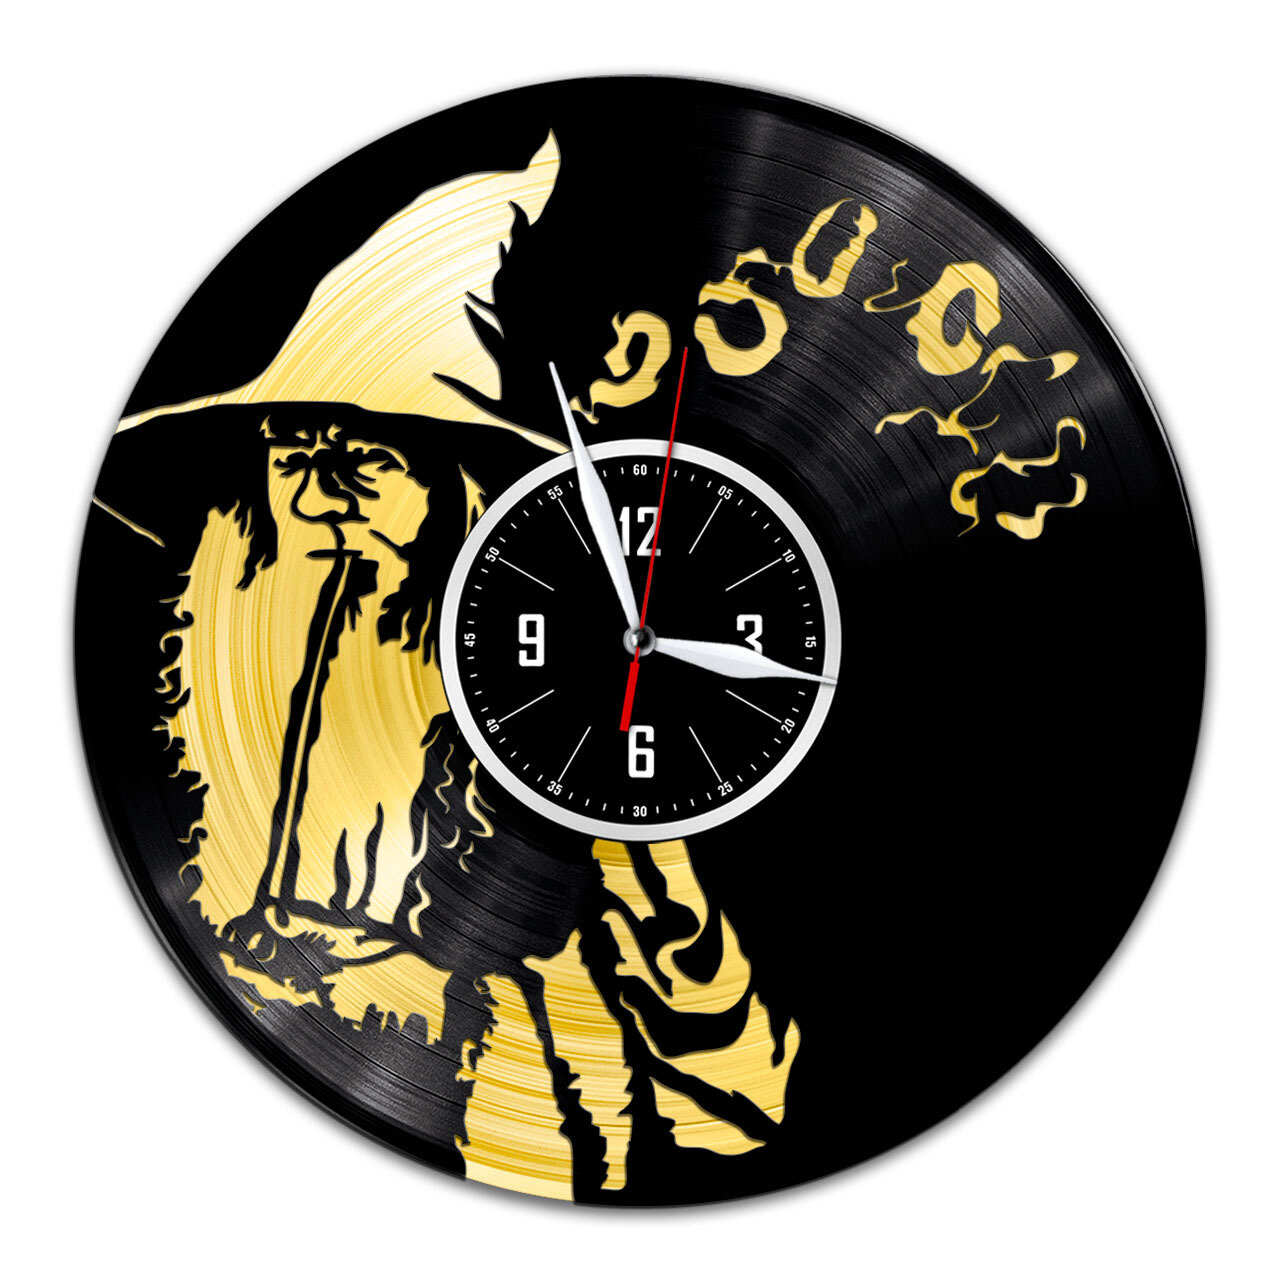 Властелин колец - настенные часы из виниловой пластинки (с золотой подложкой)